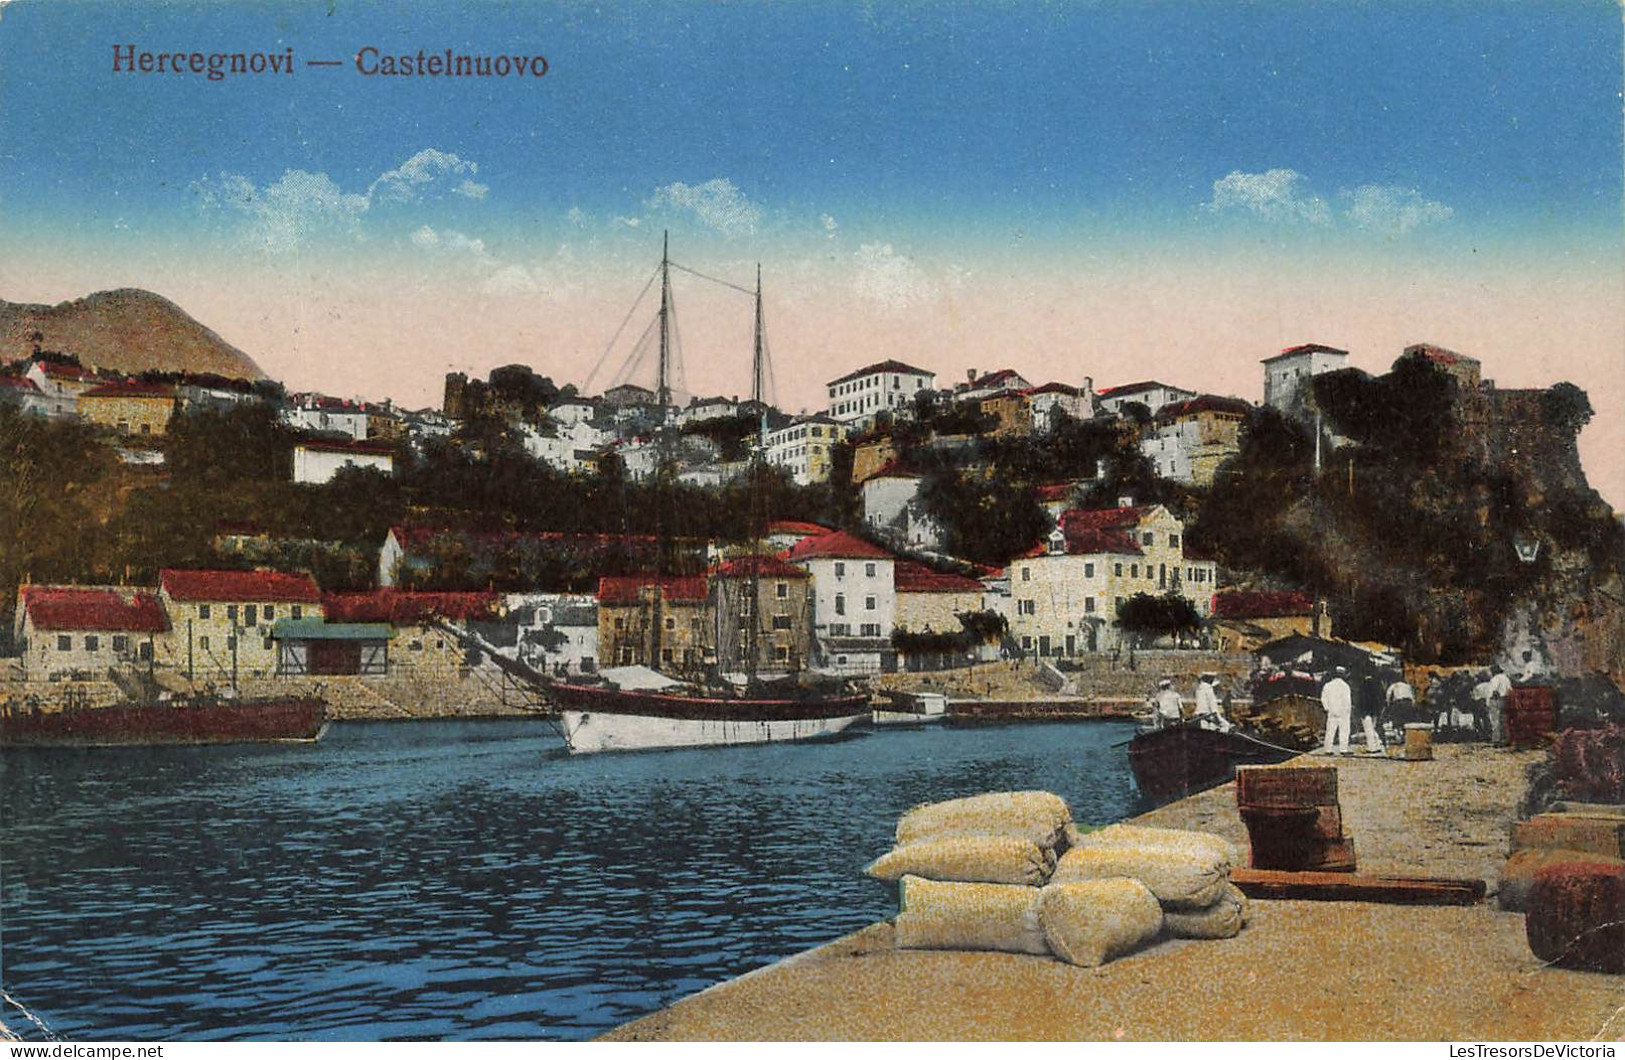 MONTENEGRO - Hercegnovi - Vue Sur La Ville De Castelnuovo - Colorisé - Carte Postale Ancienne - Montenegro